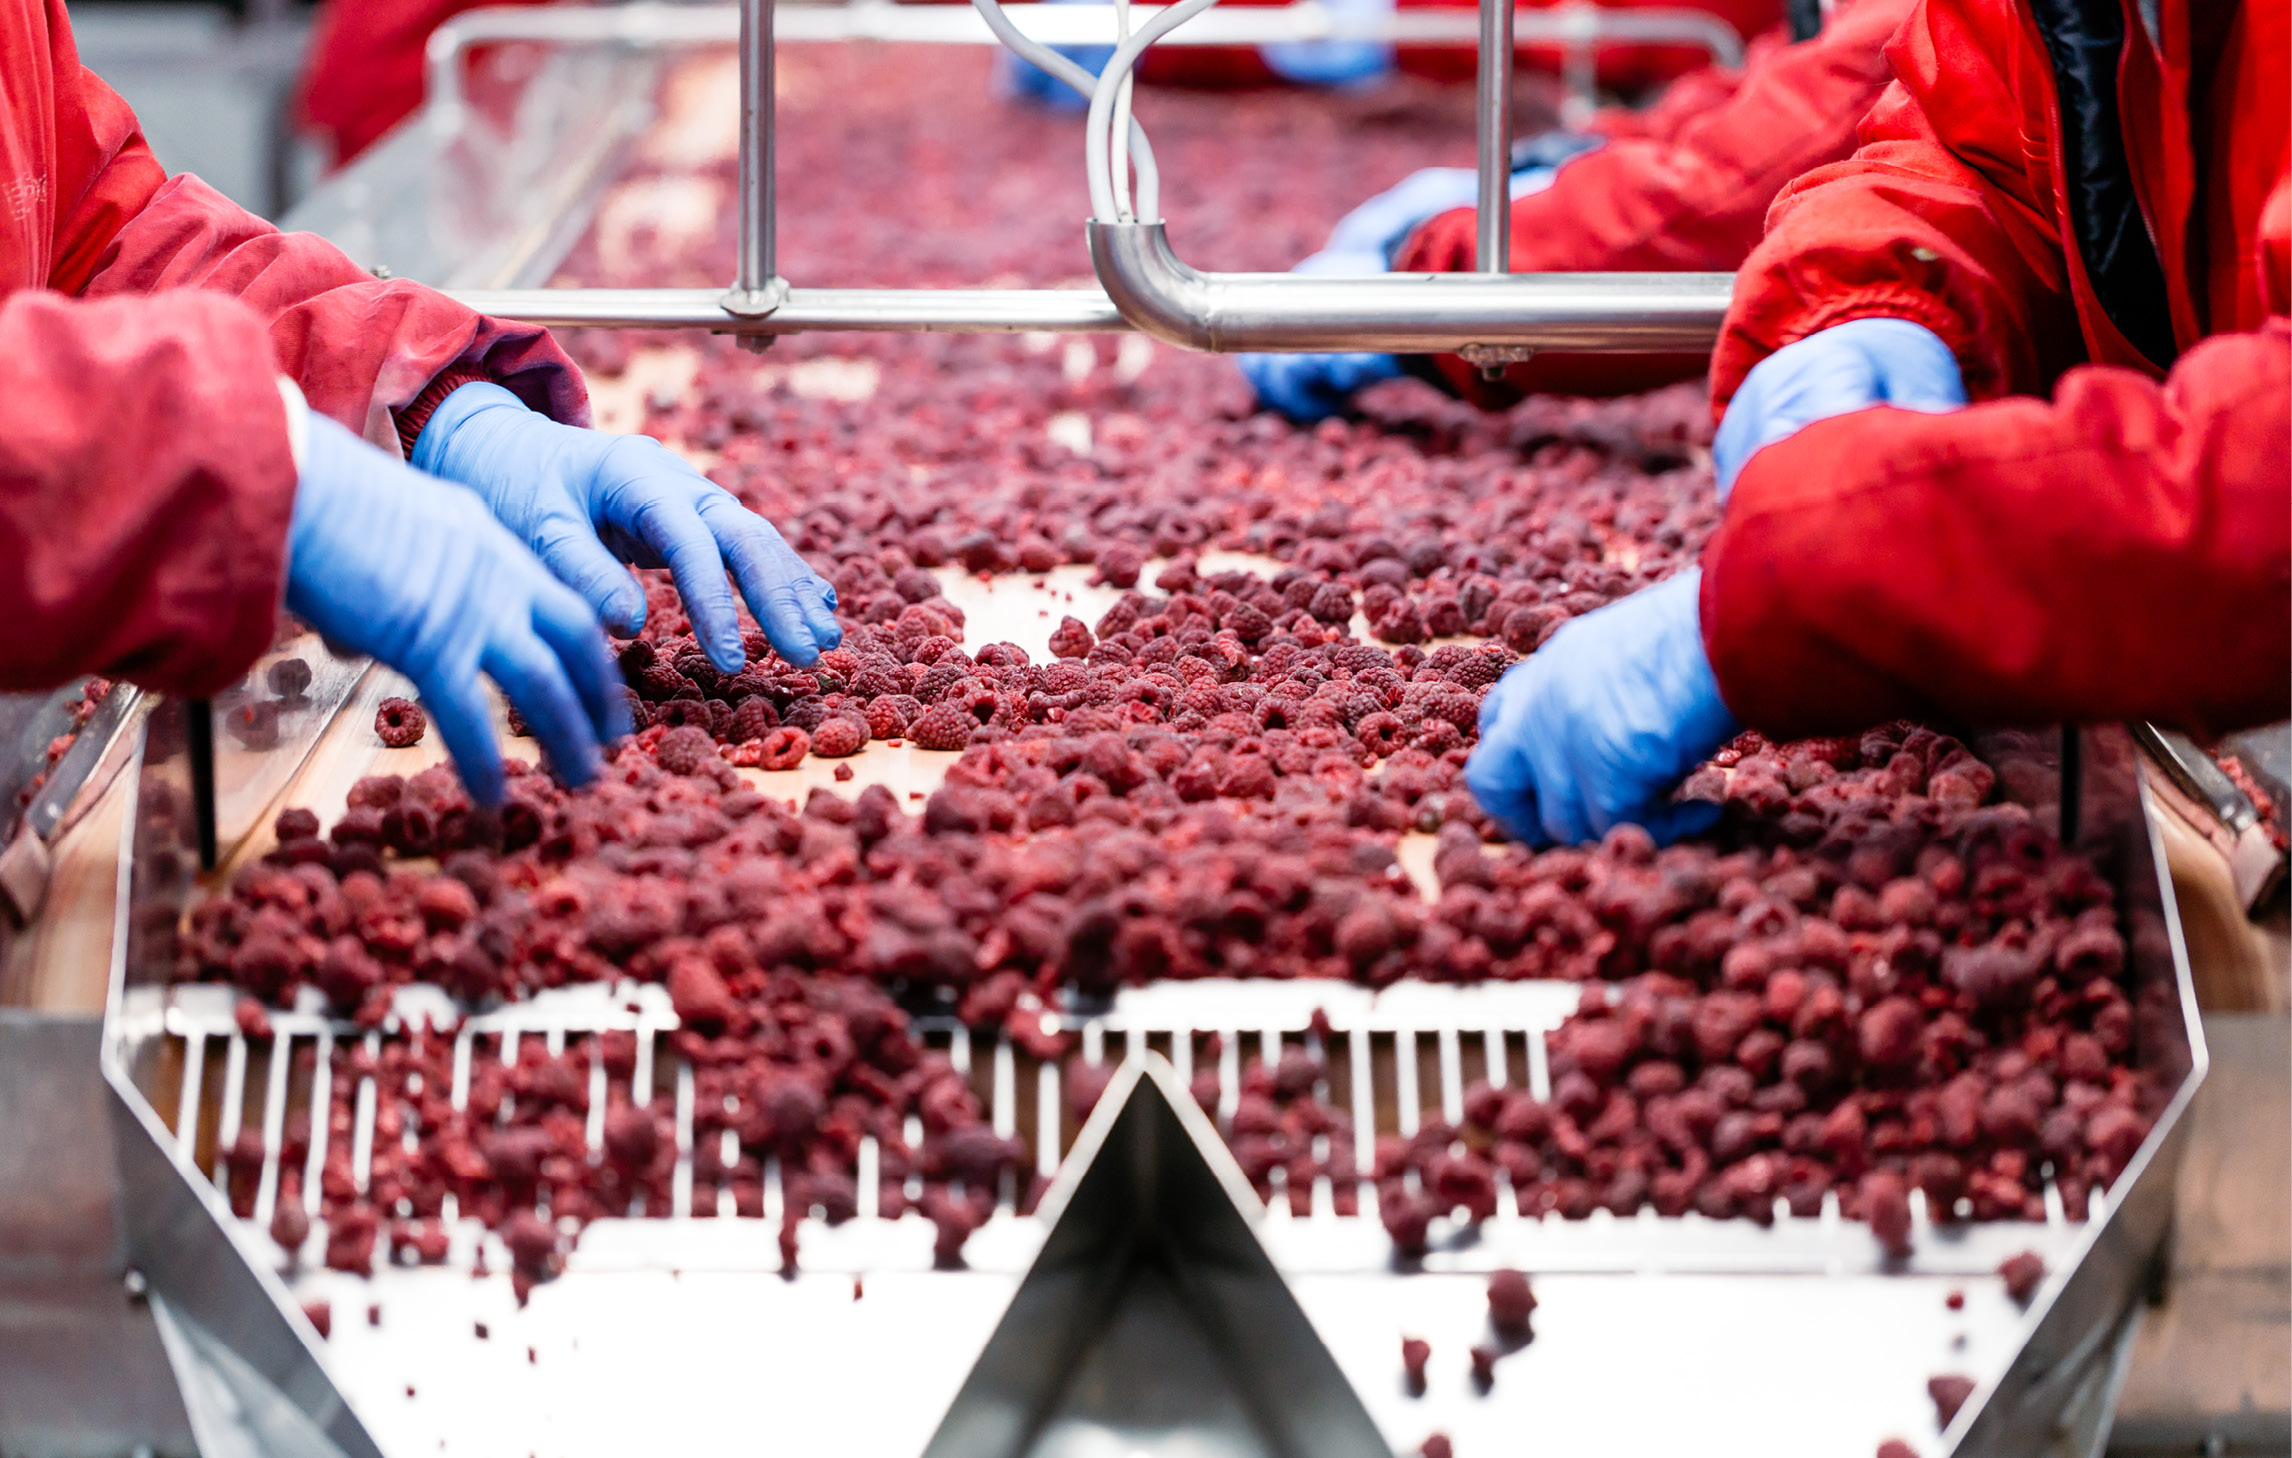 Arbeitende stehen an einem Förderband und sortieren rote Früchte. Sie tragen blaue Einmalhandschuhe